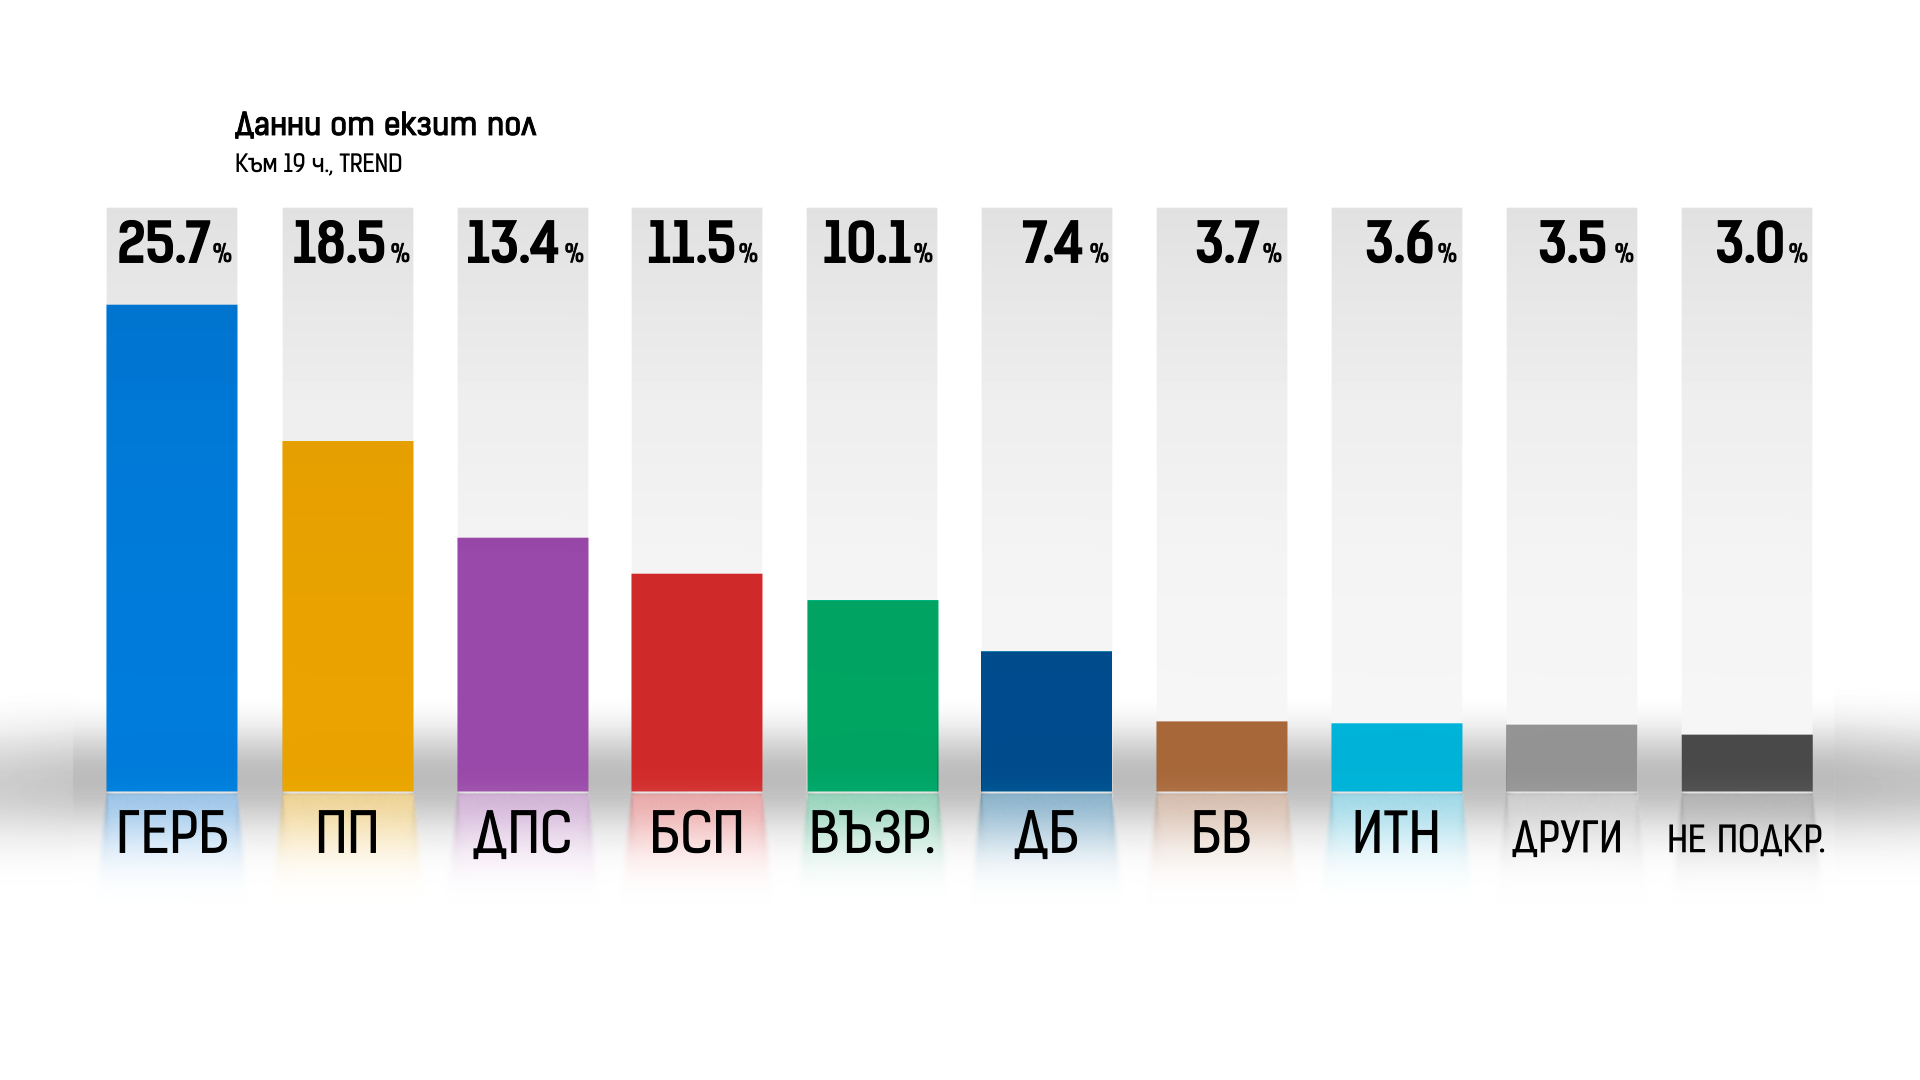 ГЕРБ СДС печели предсрочния парламентарен вот сочат резултатите от exit poll а